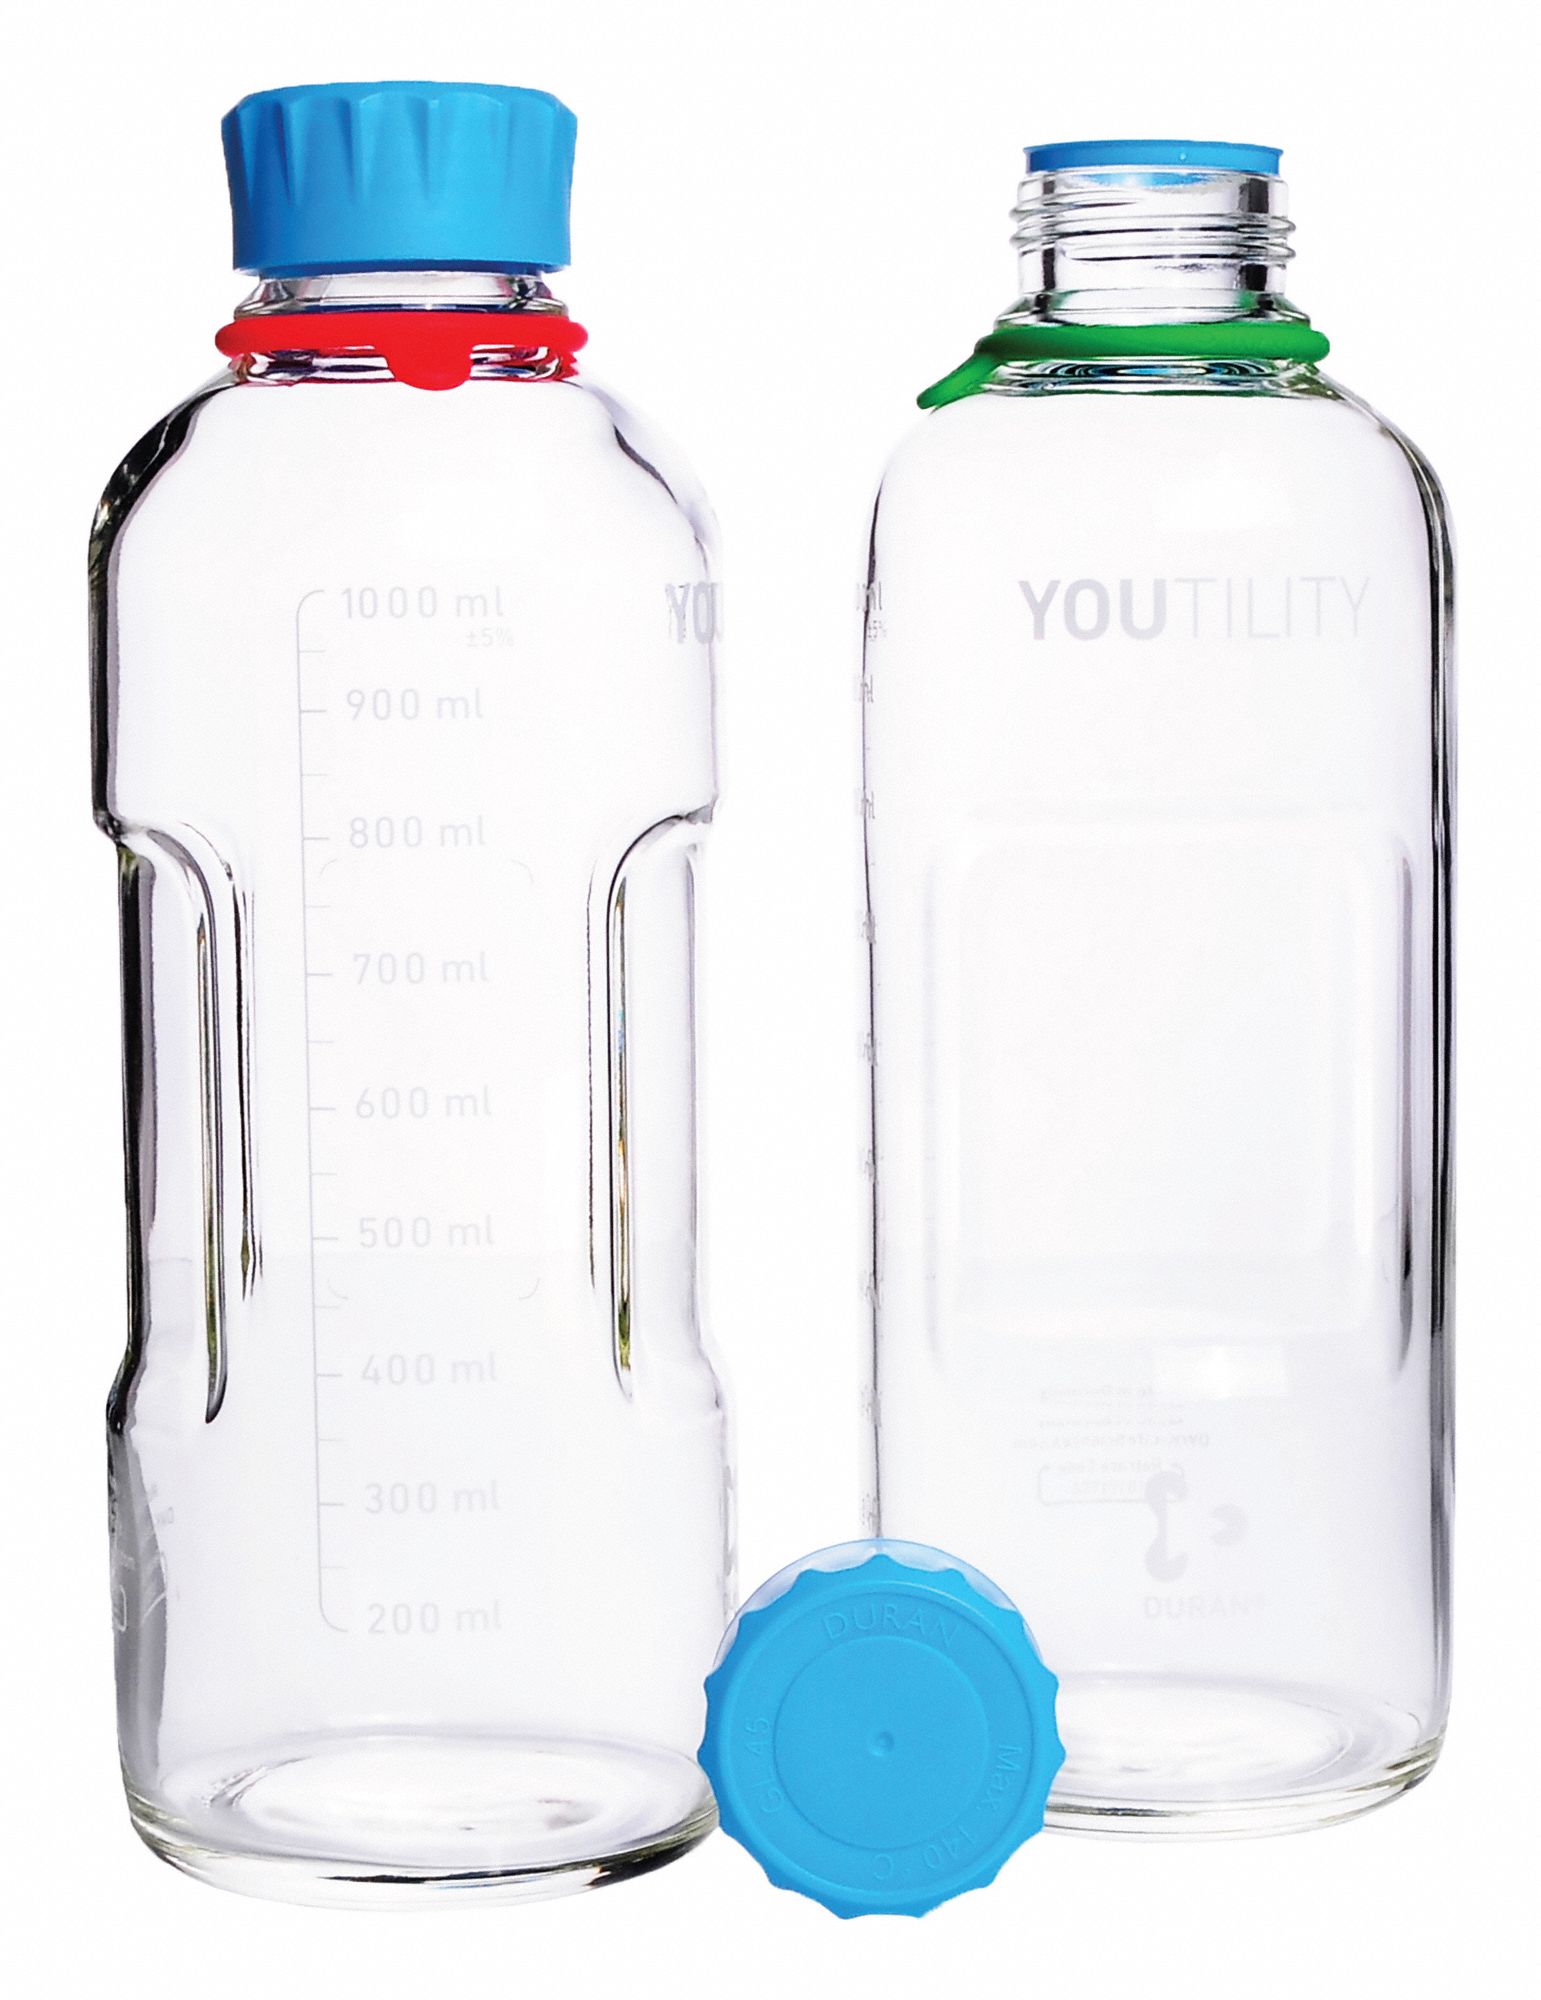 Bottle: 34 oz Labware Capacity - English, Type I Borosilicate Glass, Includes Closure, 4 PK